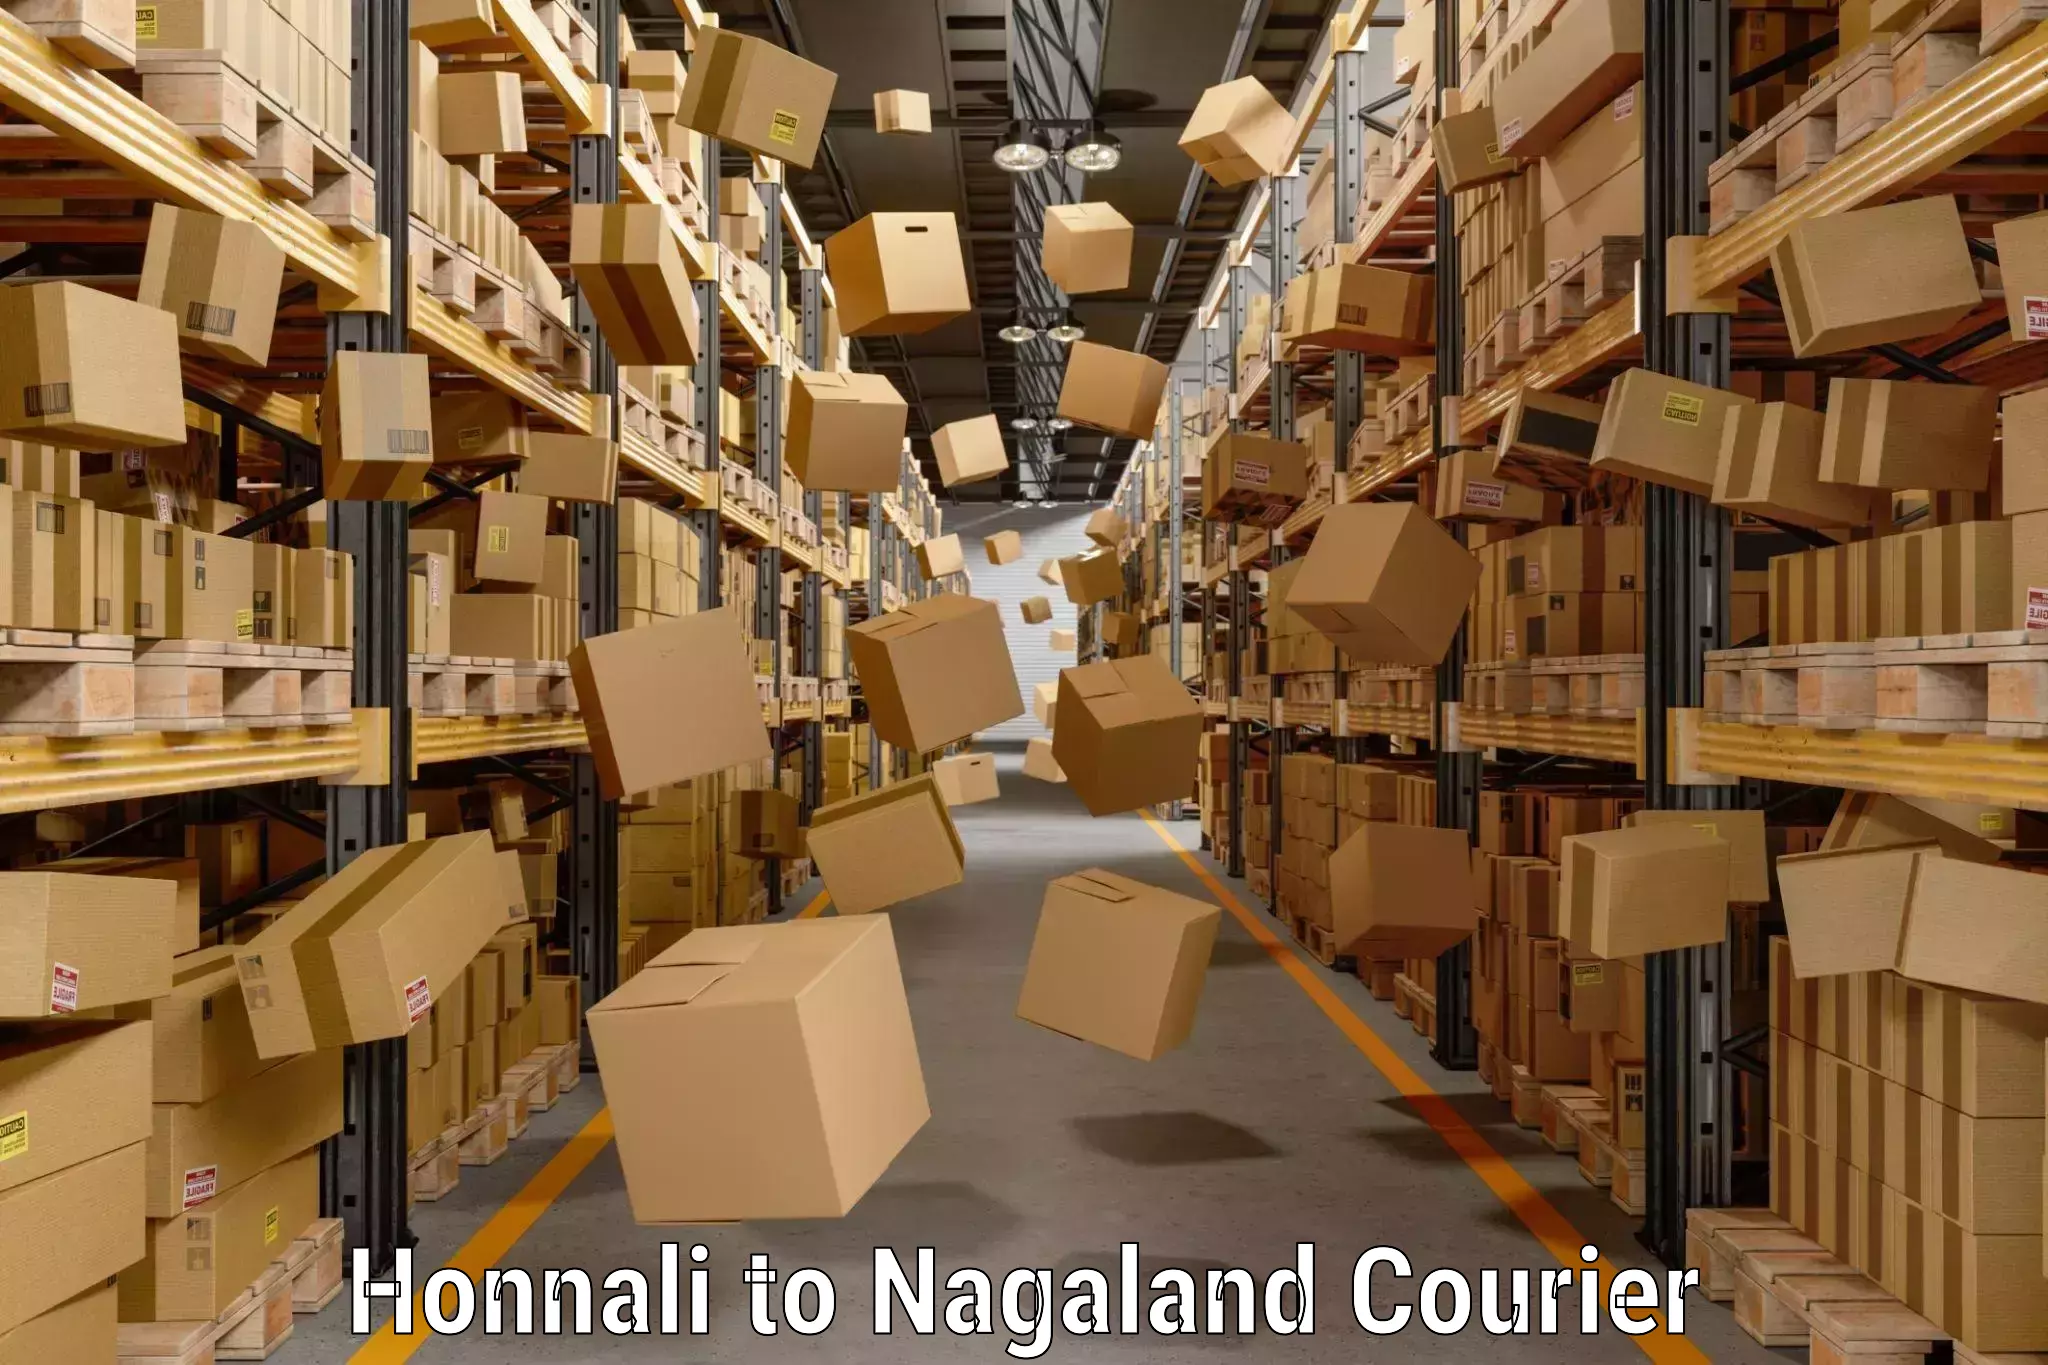 Baggage shipping experts Honnali to Nagaland